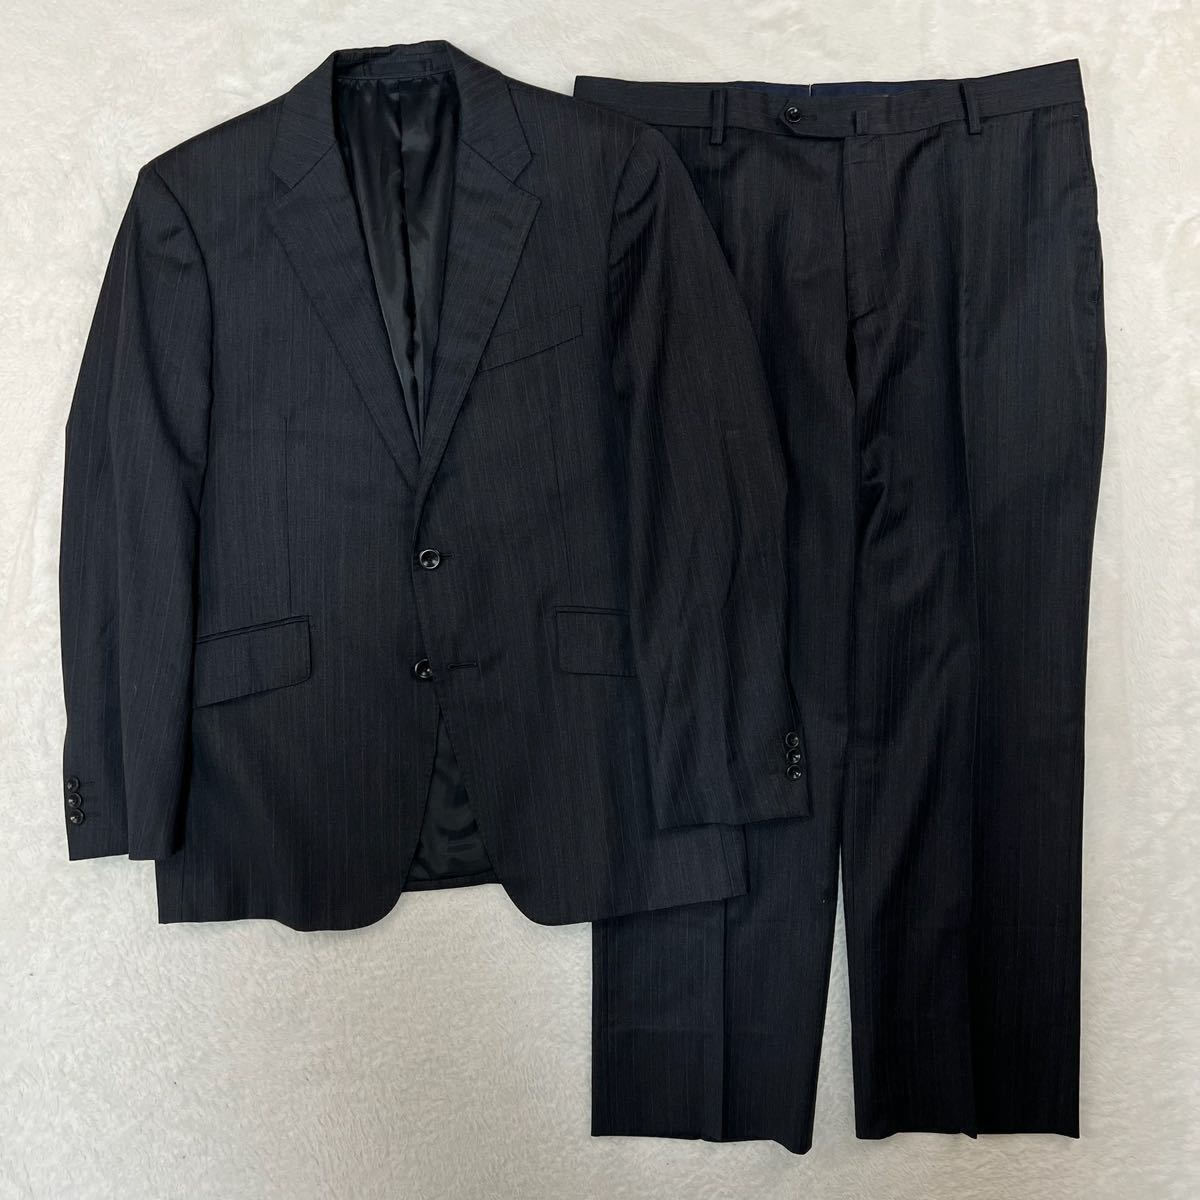 pazzo collection パッゾコレクション シルクスーツ セットアップスーツ 上下セット ビジネス ウール 高級 しなやか 光沢感 紳士服 AB5_画像1